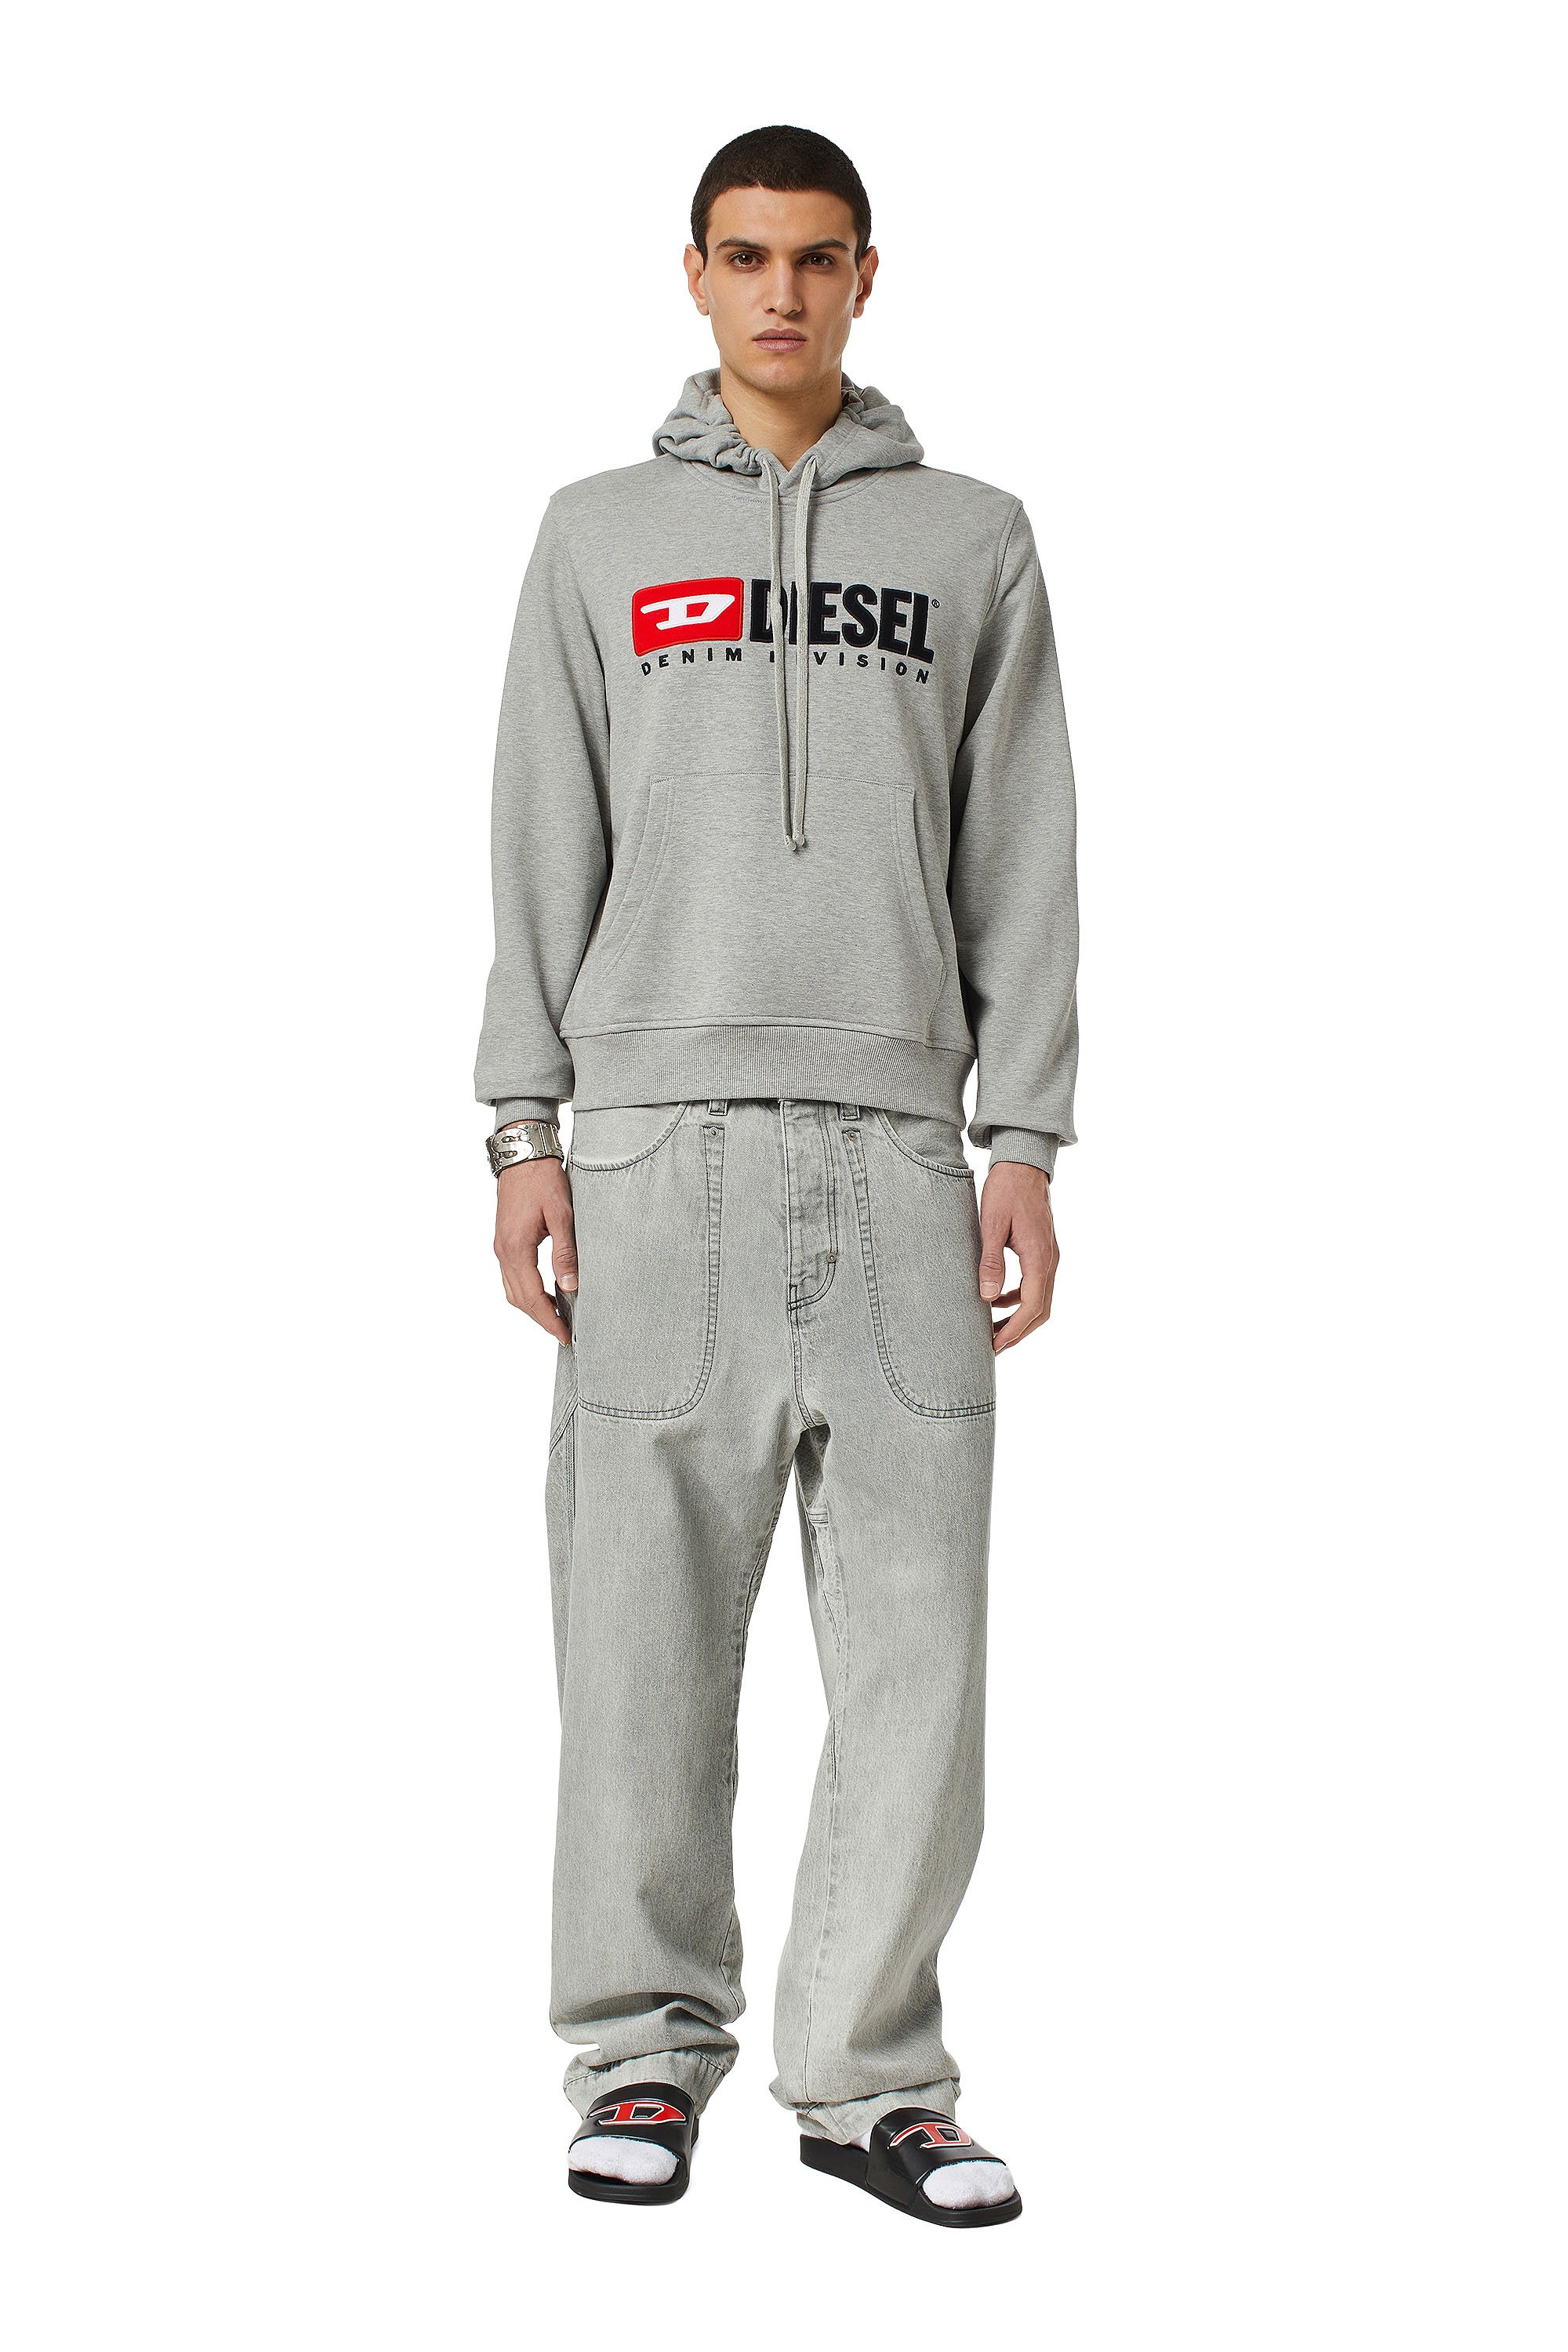 Diesel - S-GINN-HOOD-DIV, Male Denim Division hoodie in Grey - Image 2